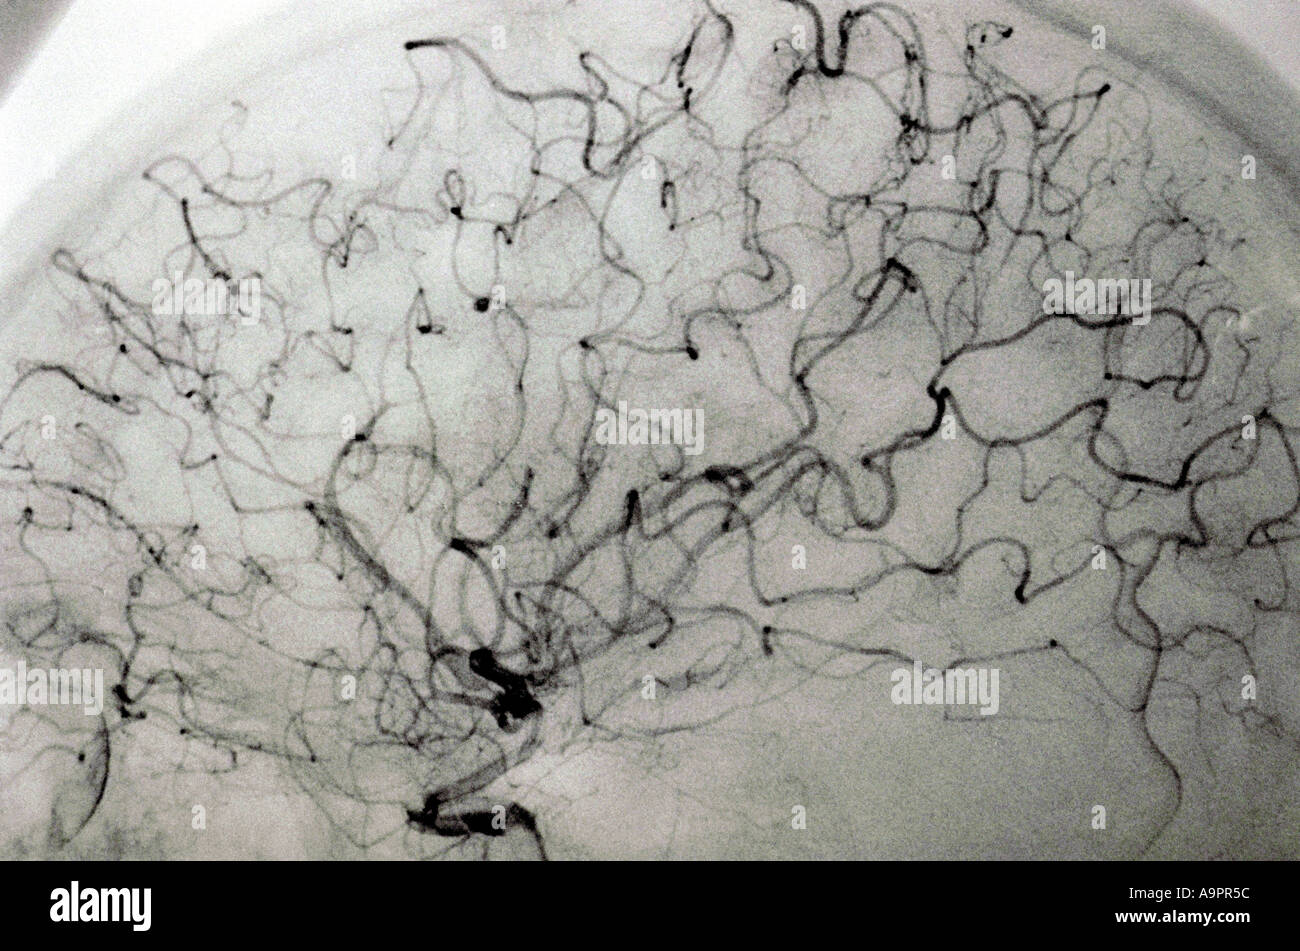 Angiogram anterior cerebral artery embolism Stock Photo